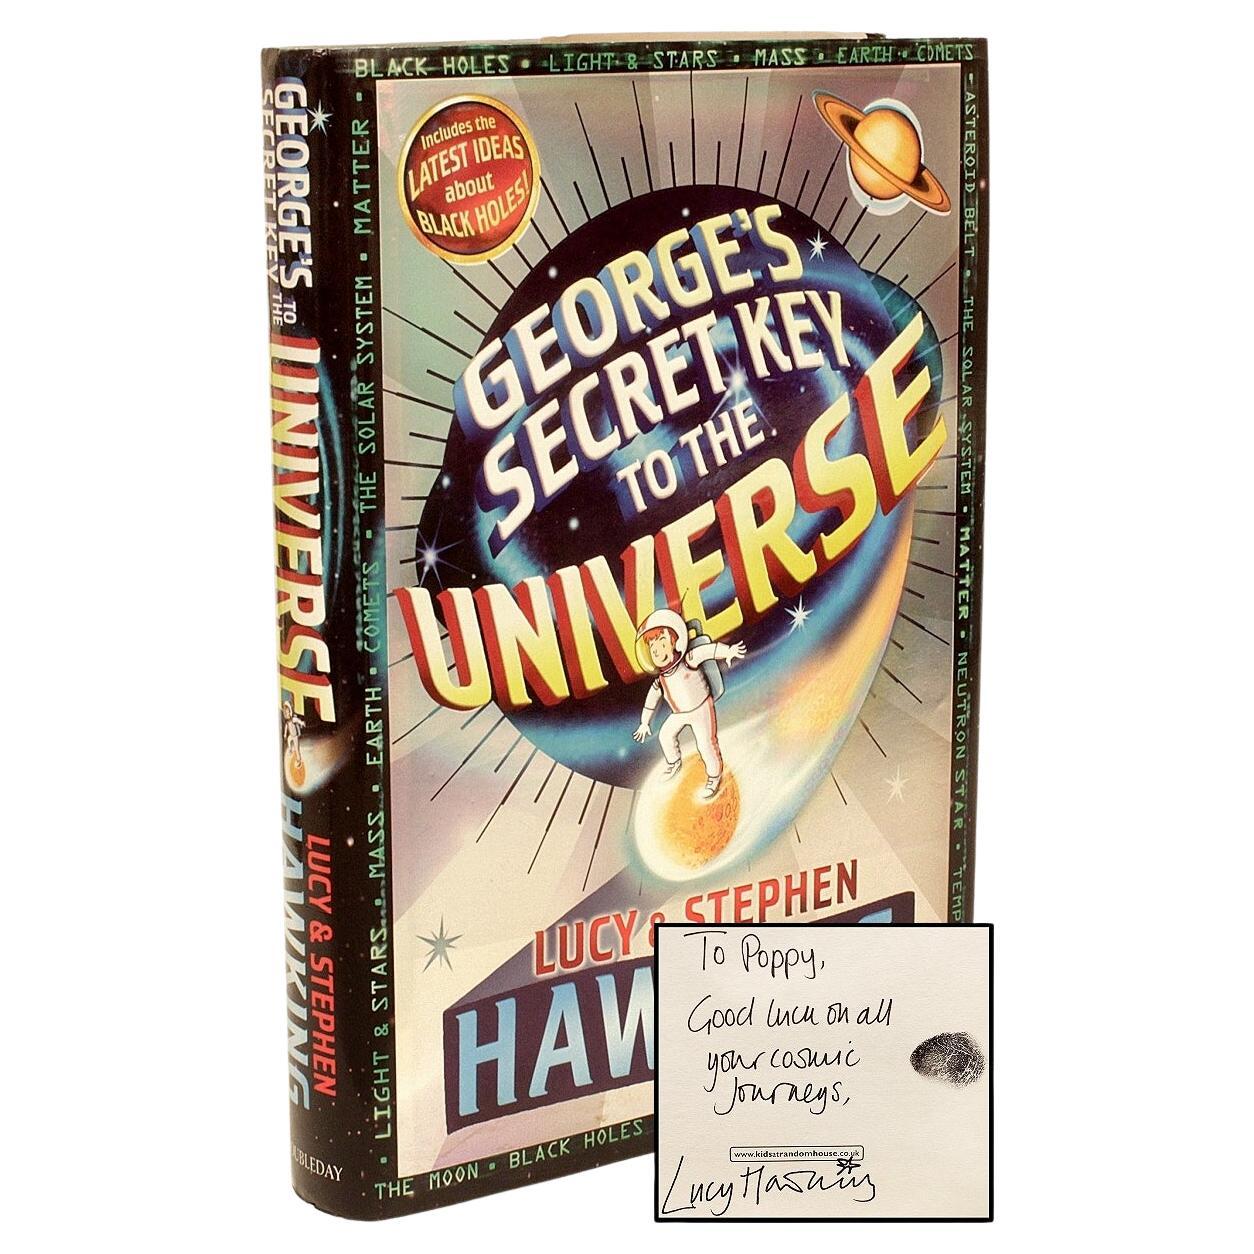 Lucy et Stephen Hawking. La clé secrète de George à l'Univers, 1ère édition, signée en vente